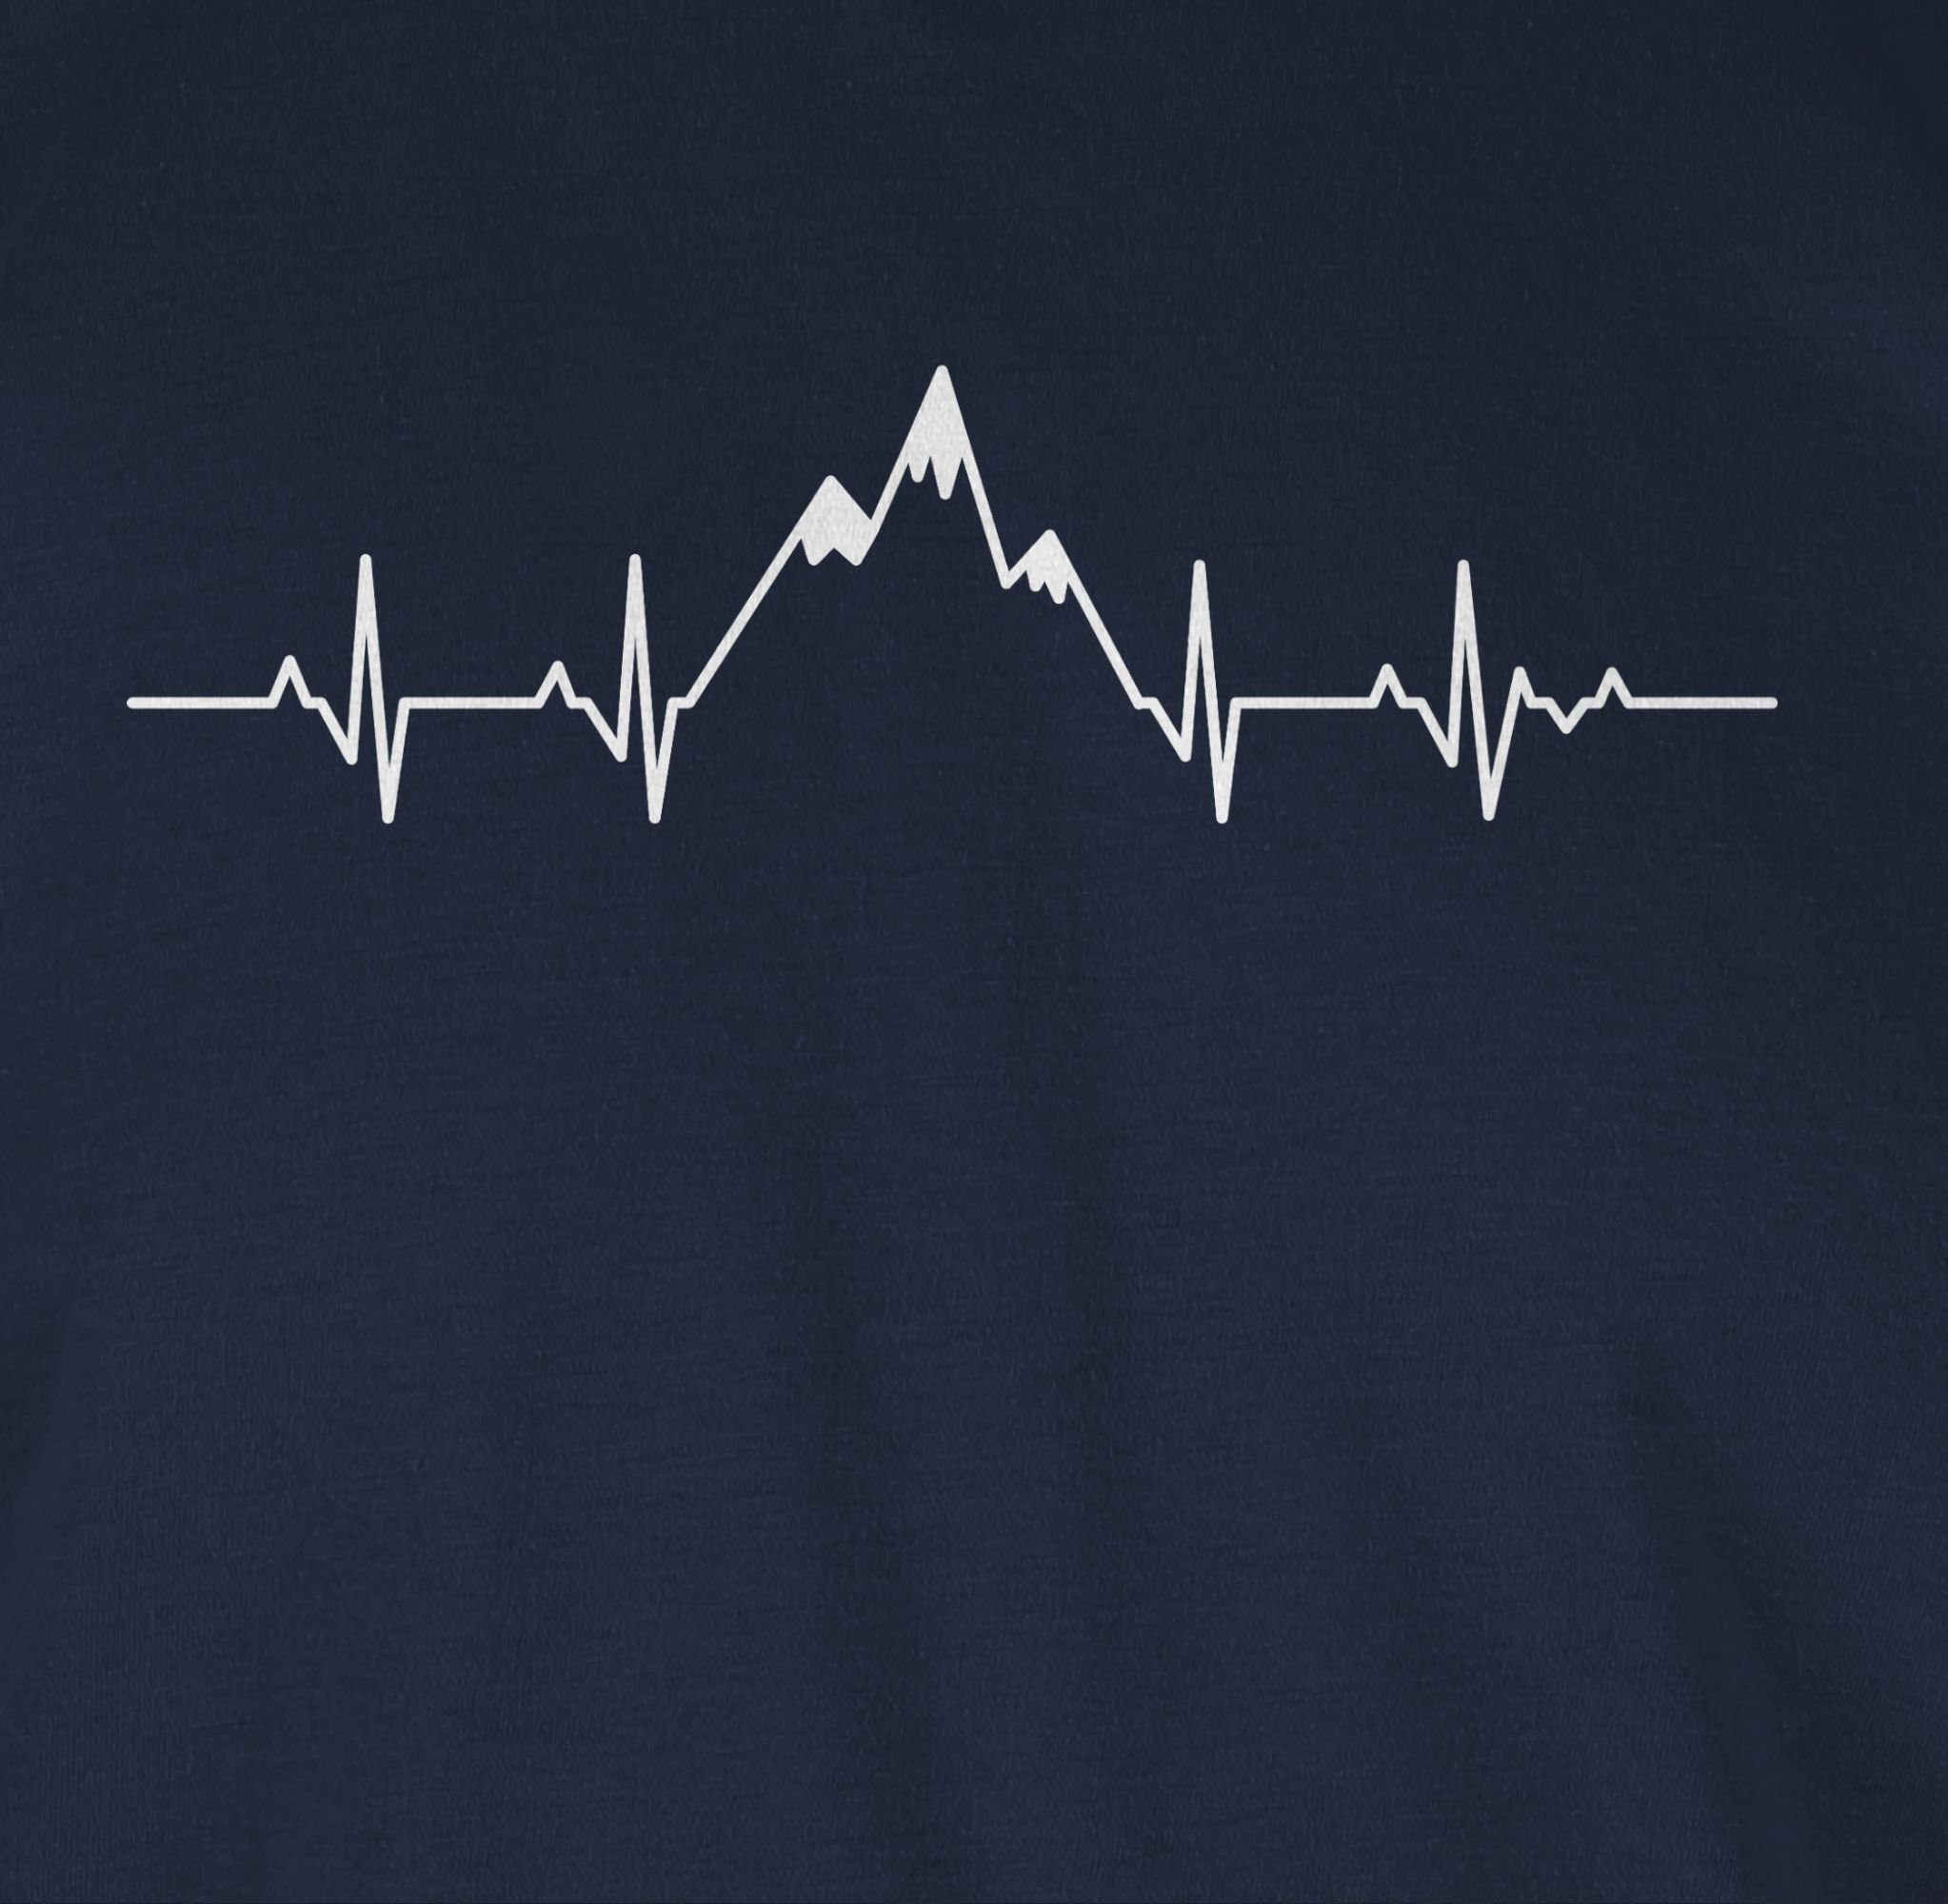 Shirtracer T-Shirt Herzschlag Berge Blau und Symbol Navy Zeichen Outfit 02